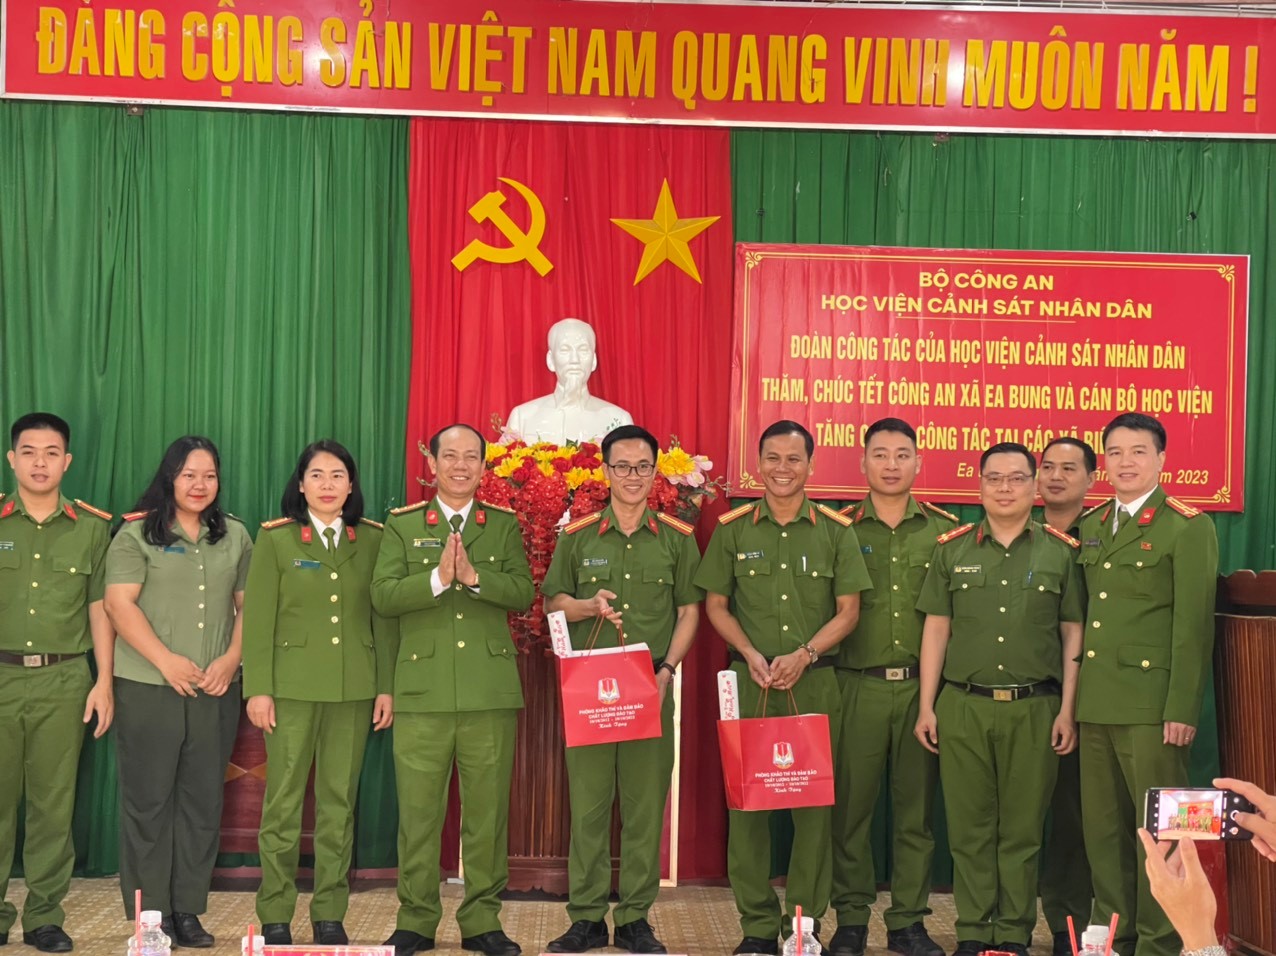 Đoàn công tác tặng quà cho cán bộ chiến sĩ Công an xã Ea Bung